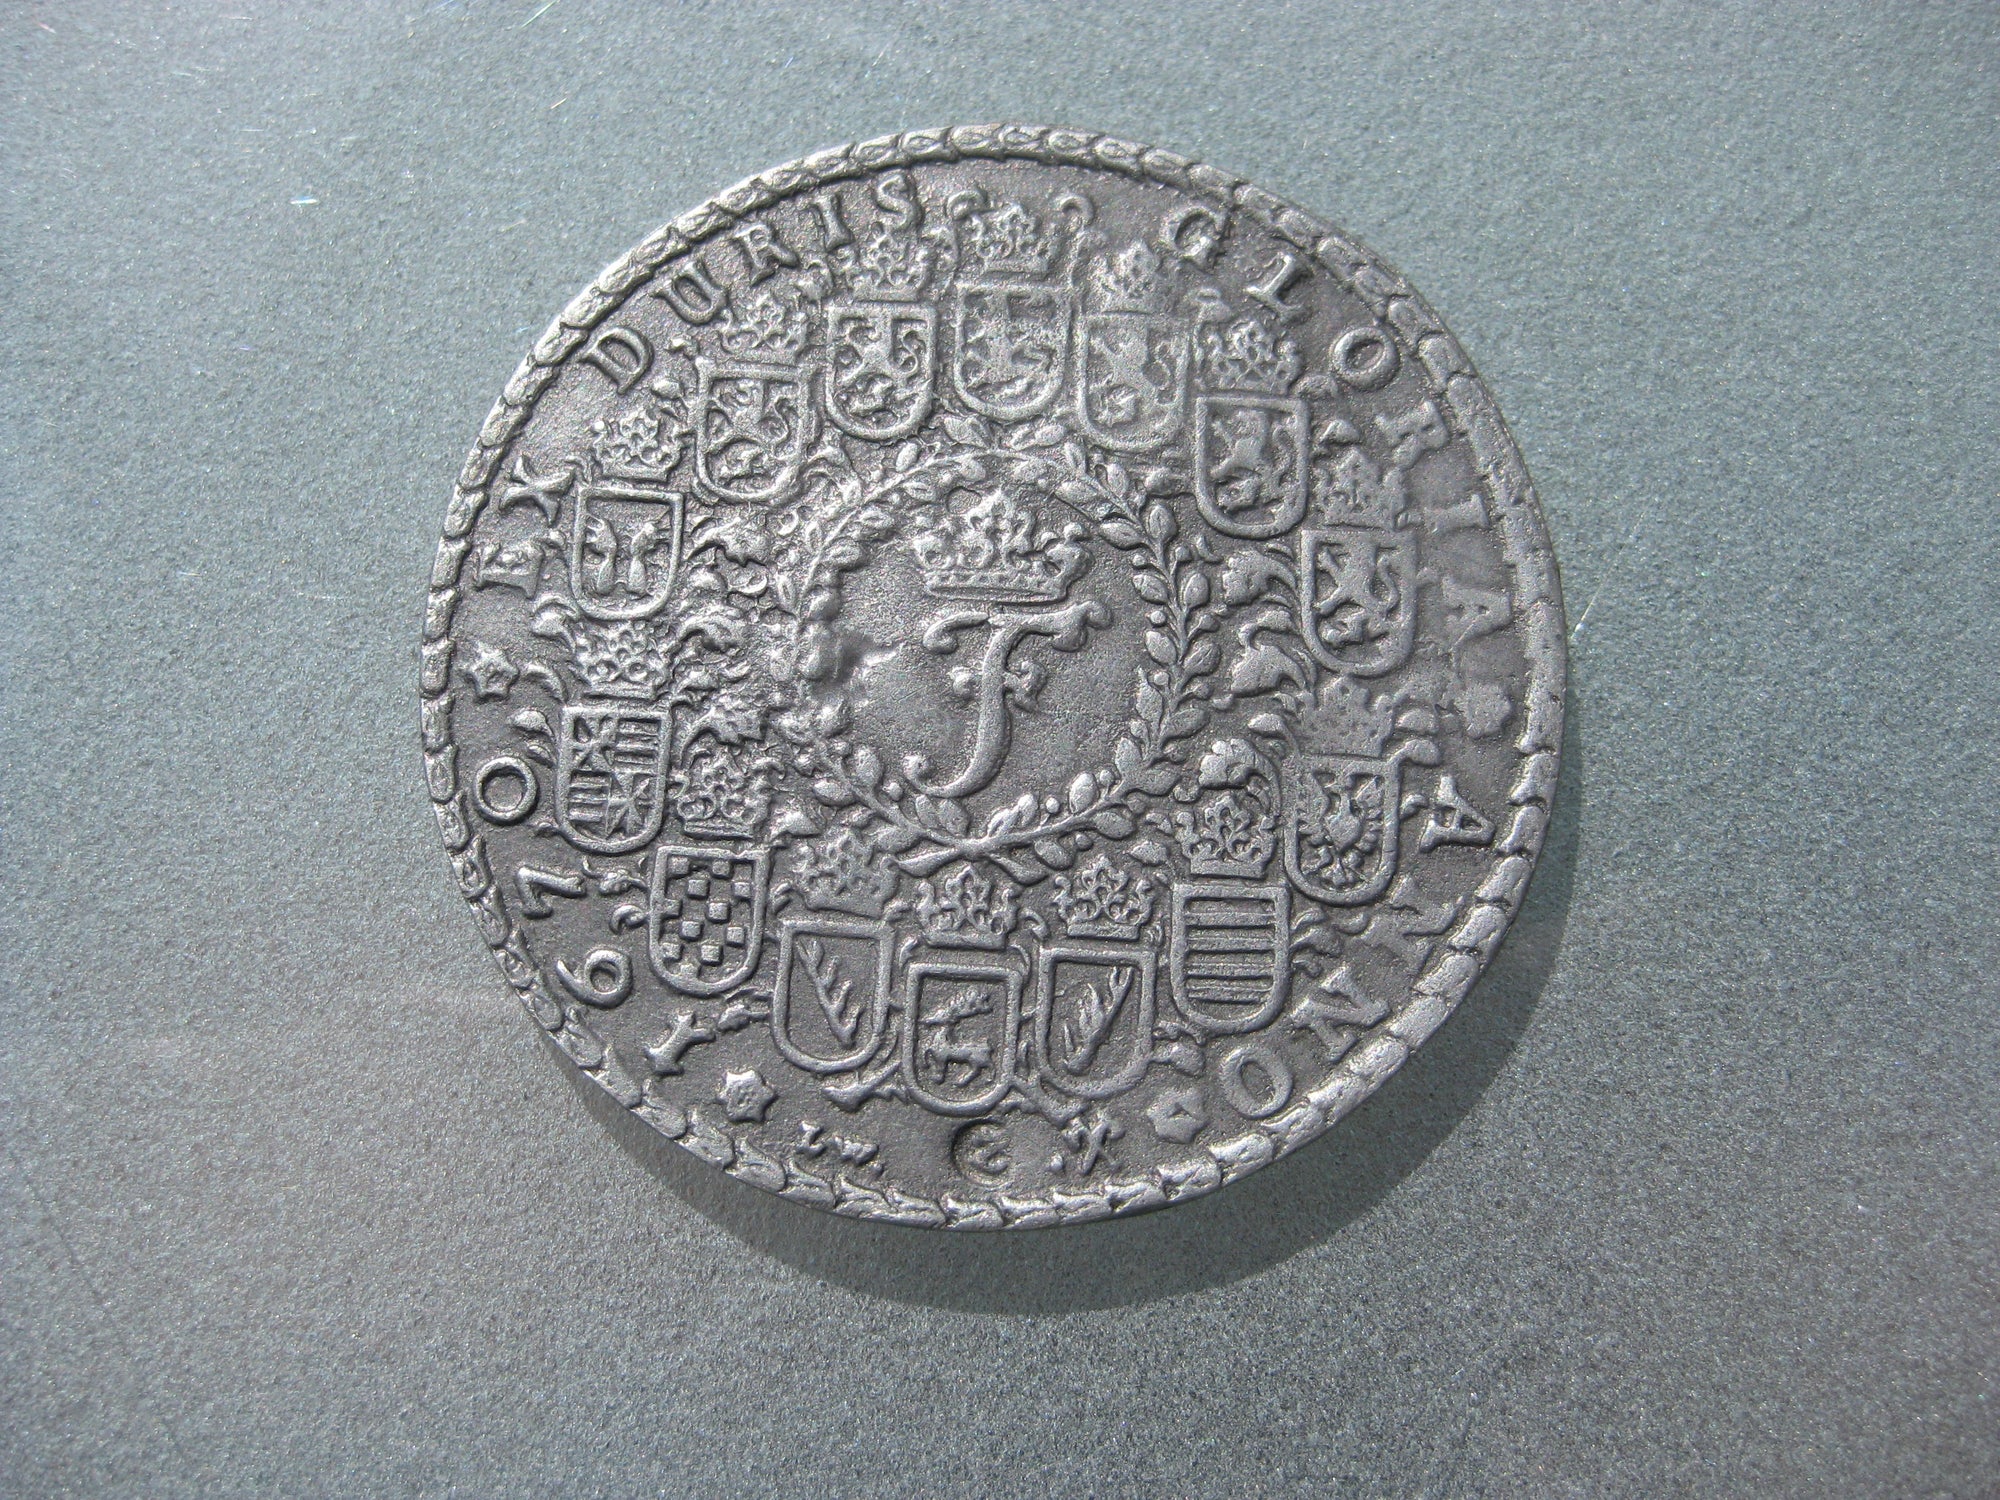 unbekannte Medaille Erinnerungsmedaille Hannover Braunschweig ??? duris gloria Anno 1670